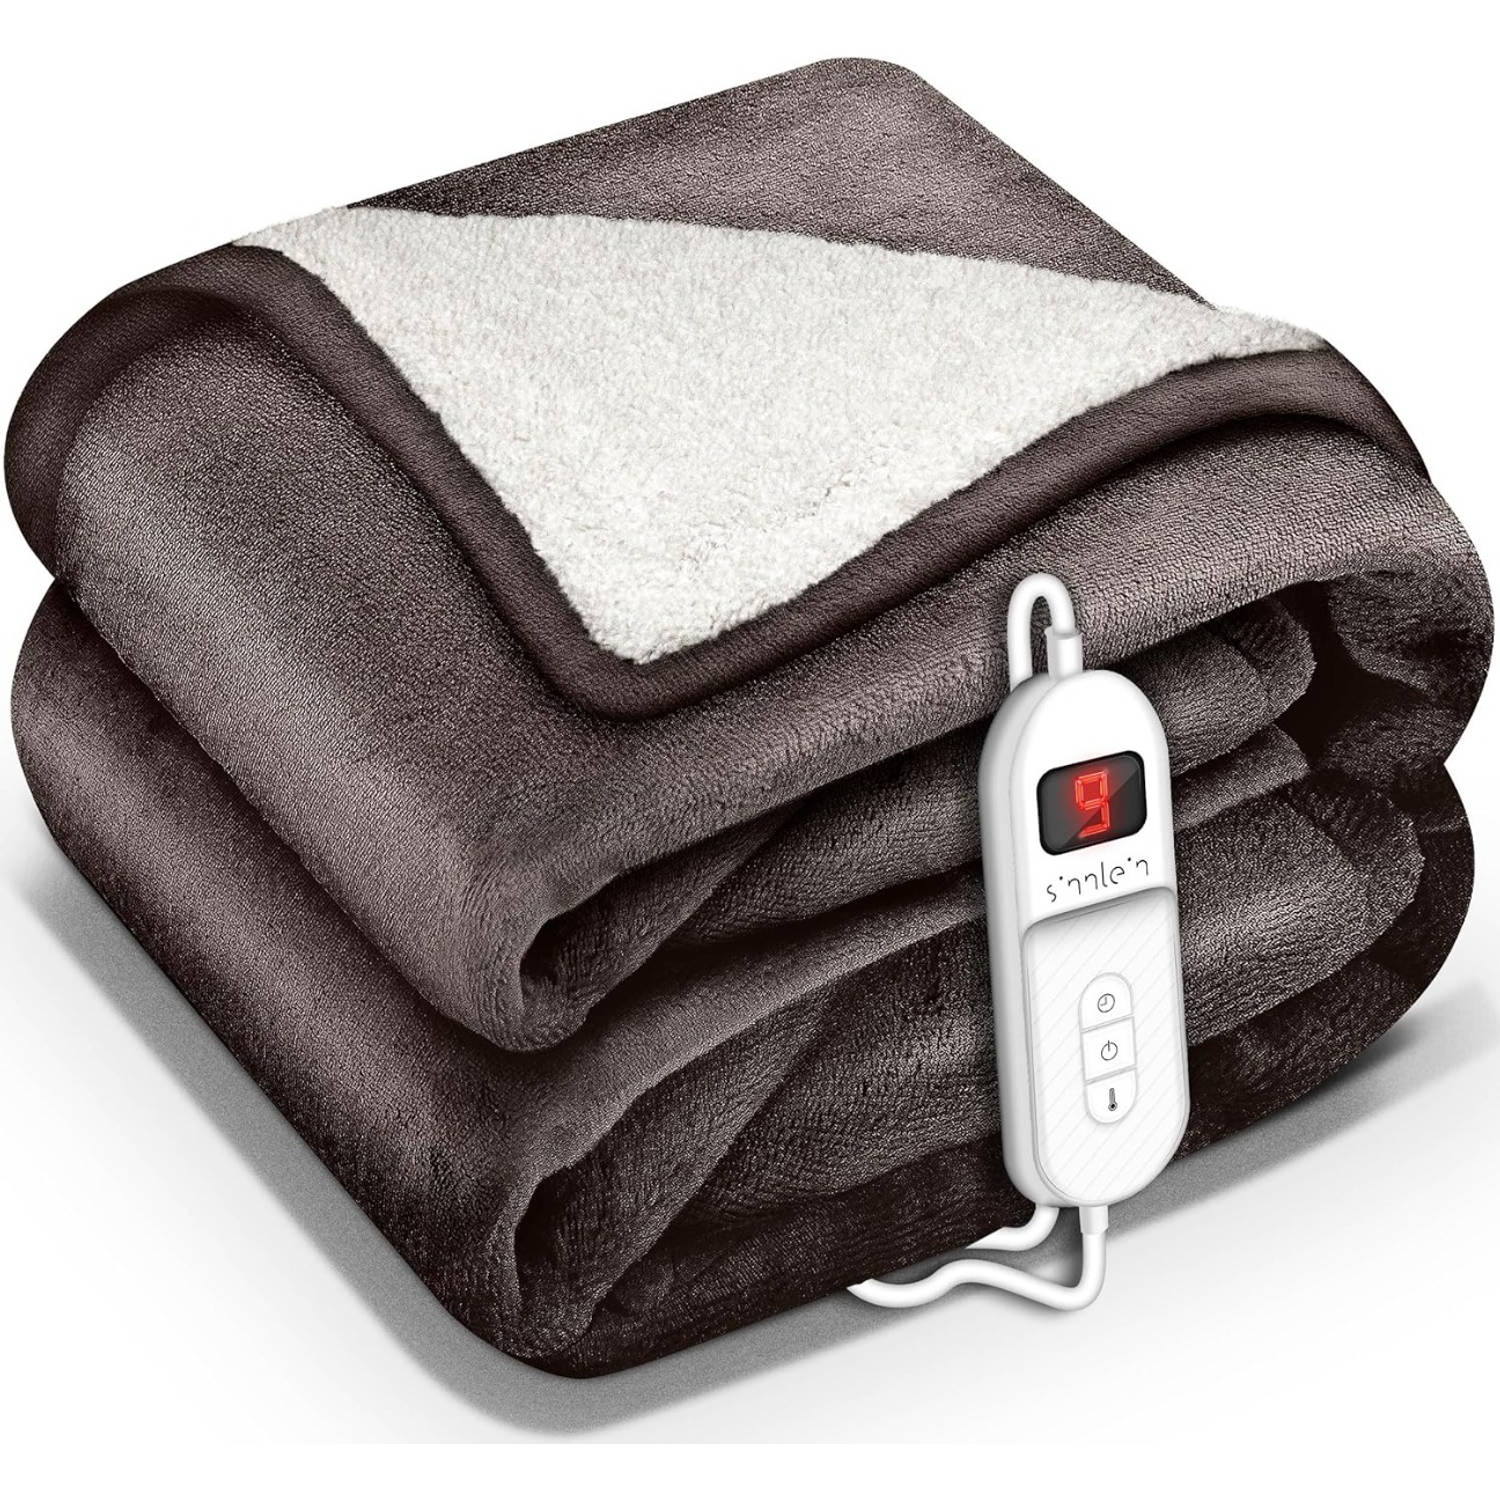 Sinnlein- Elektrische deken met automatische uitschakeling, bruin, 200 x 180 cm, warmtedeken met 9 t